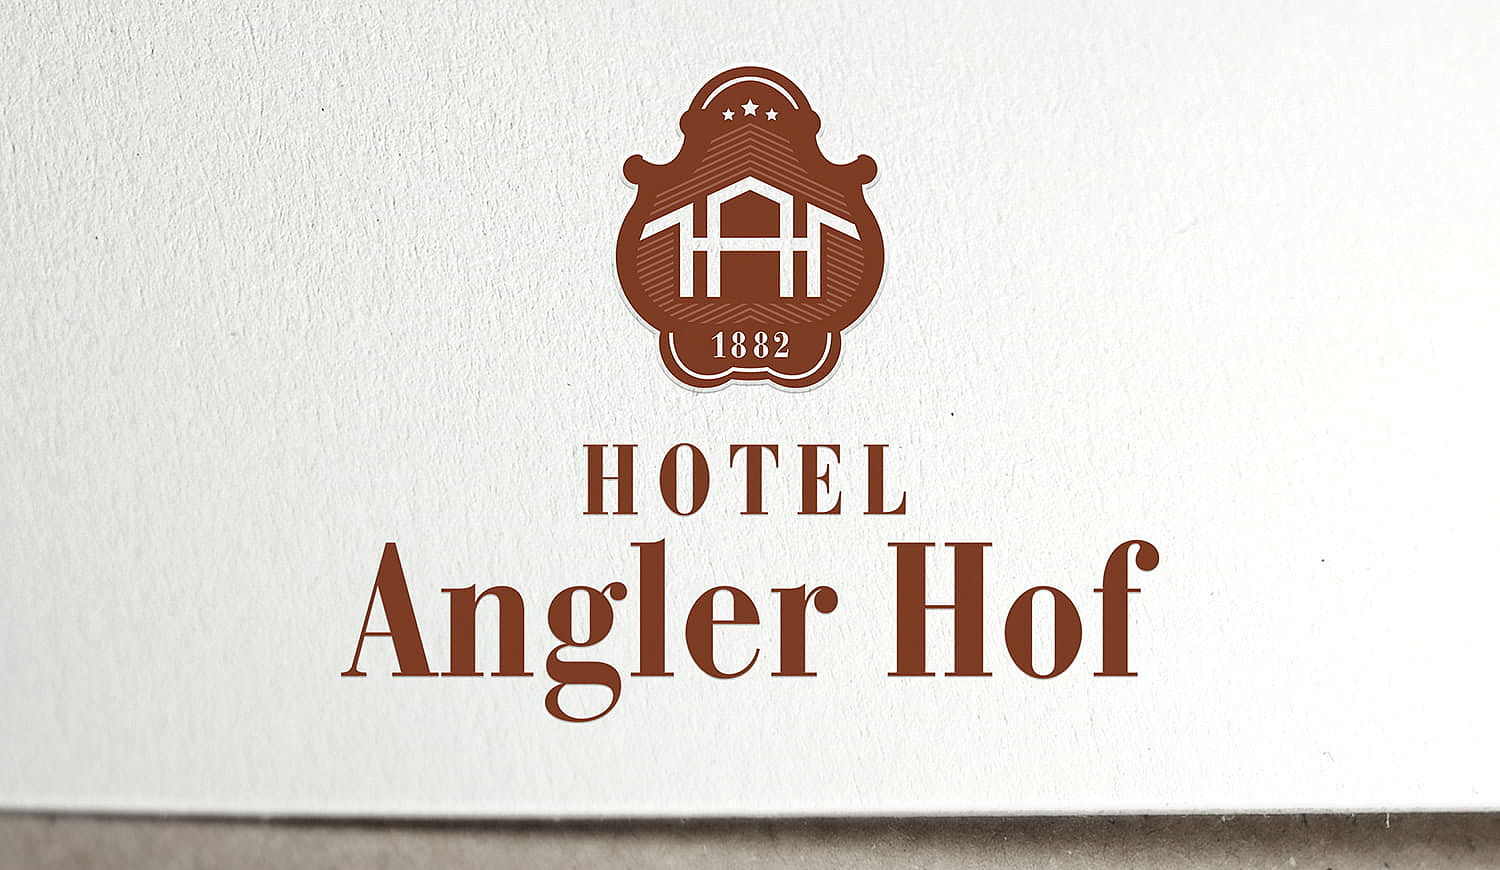 Angler Hof Landgasthotel GmbH & Co. KG